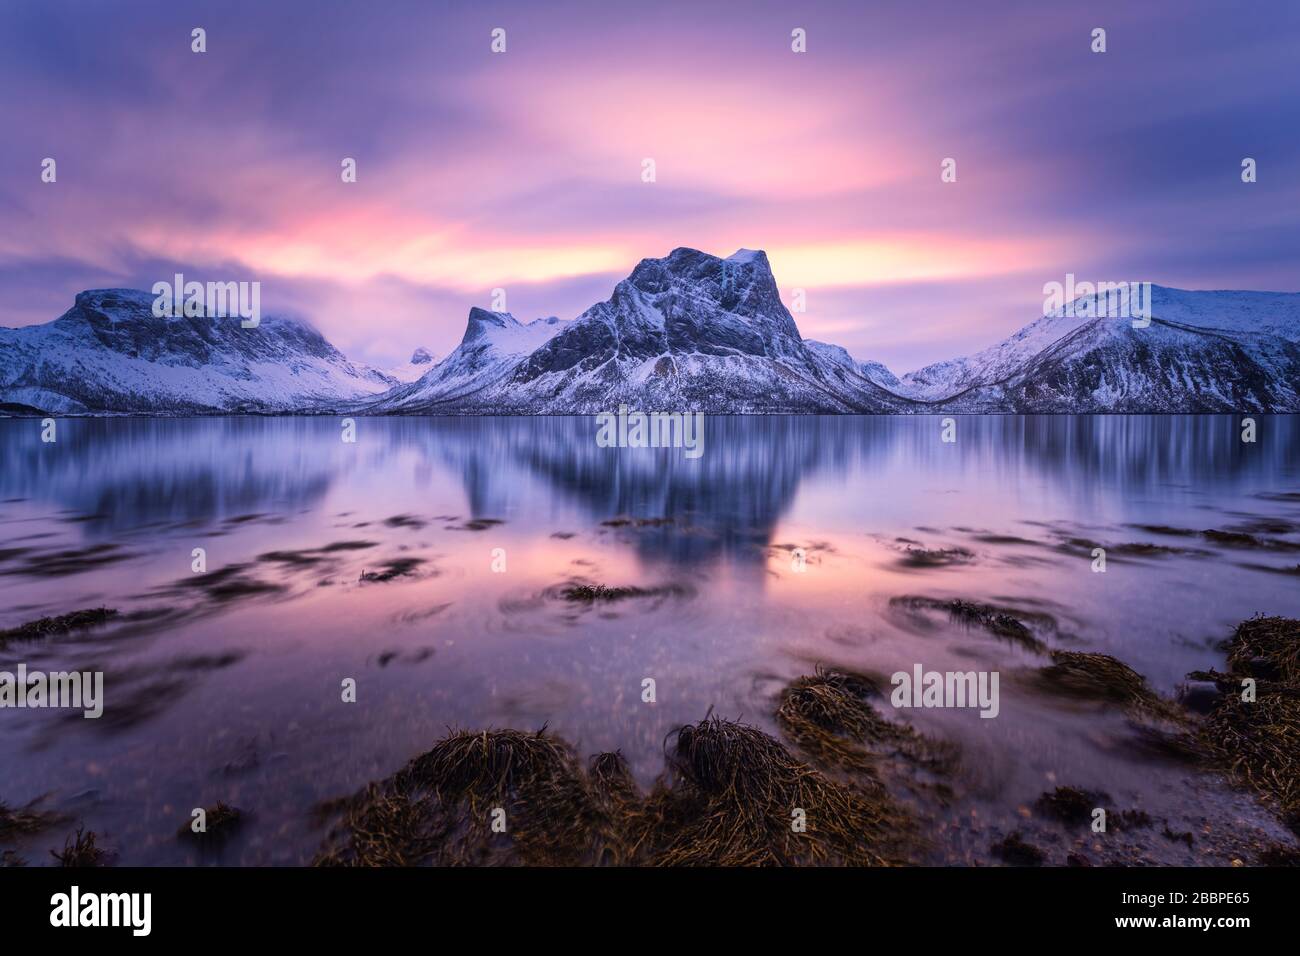 Montagnes enneigées avec ses réflexions dans l'eau calme du fjord, le ciel tôt le matin est très coloré Banque D'Images